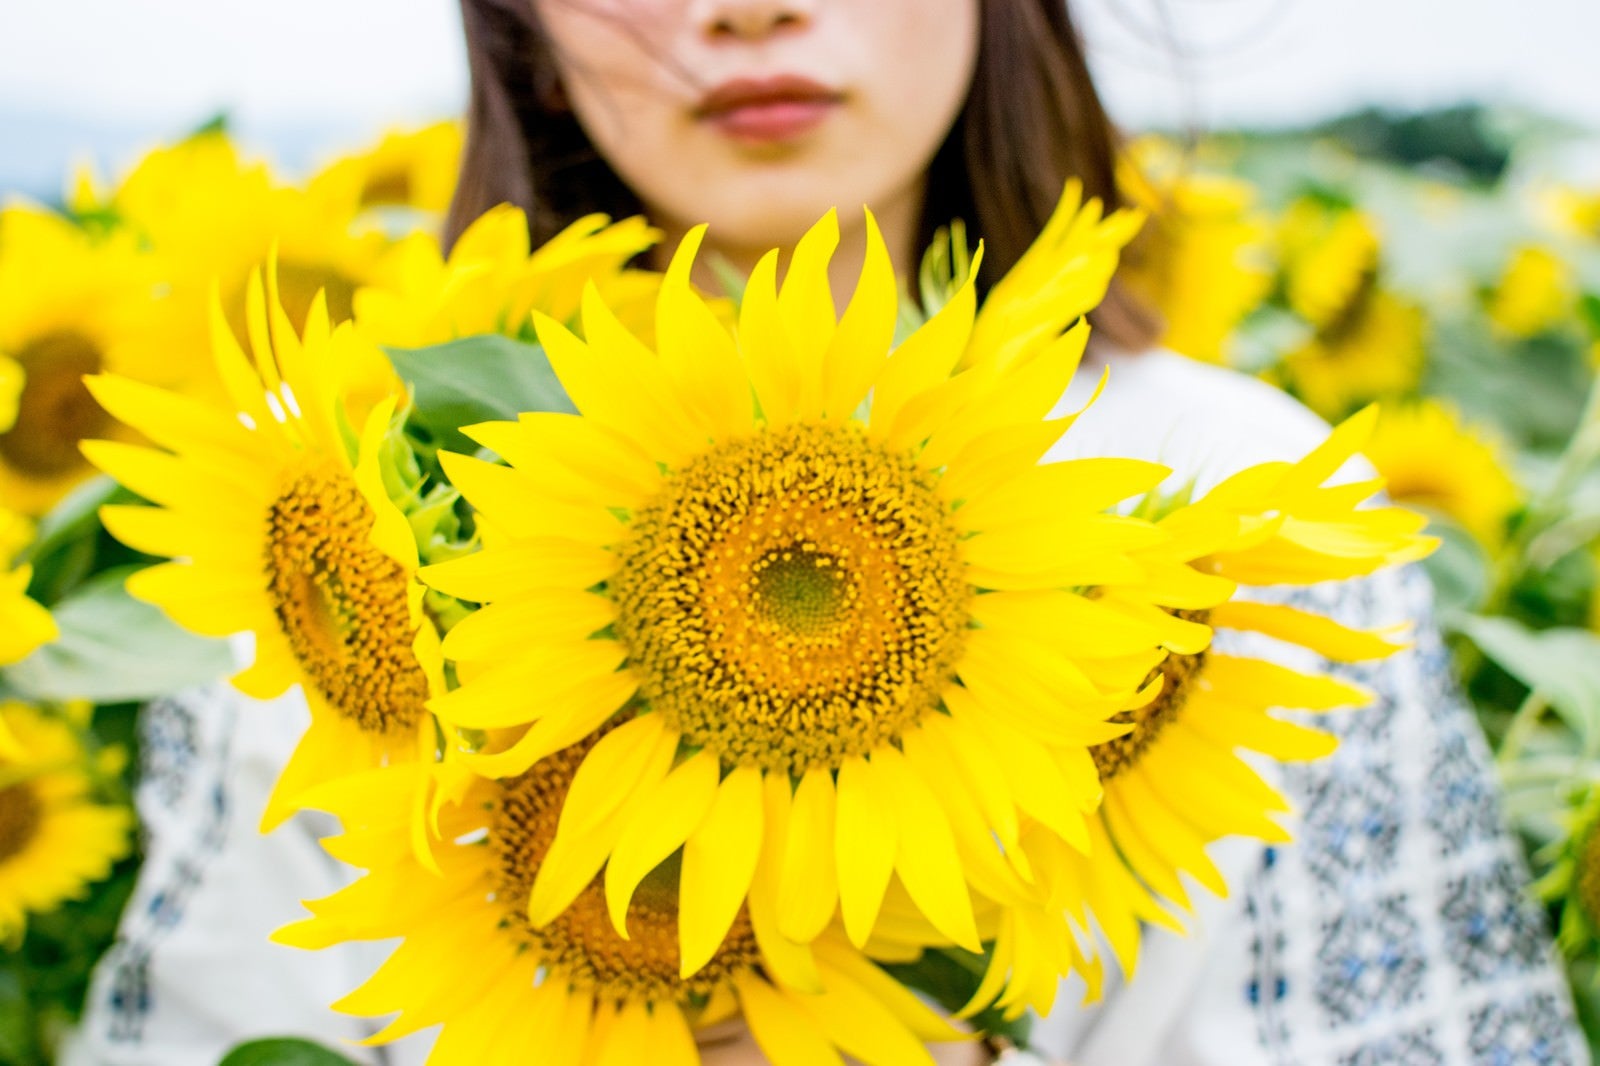 「向日葵畑の中で花を持った女性」の写真